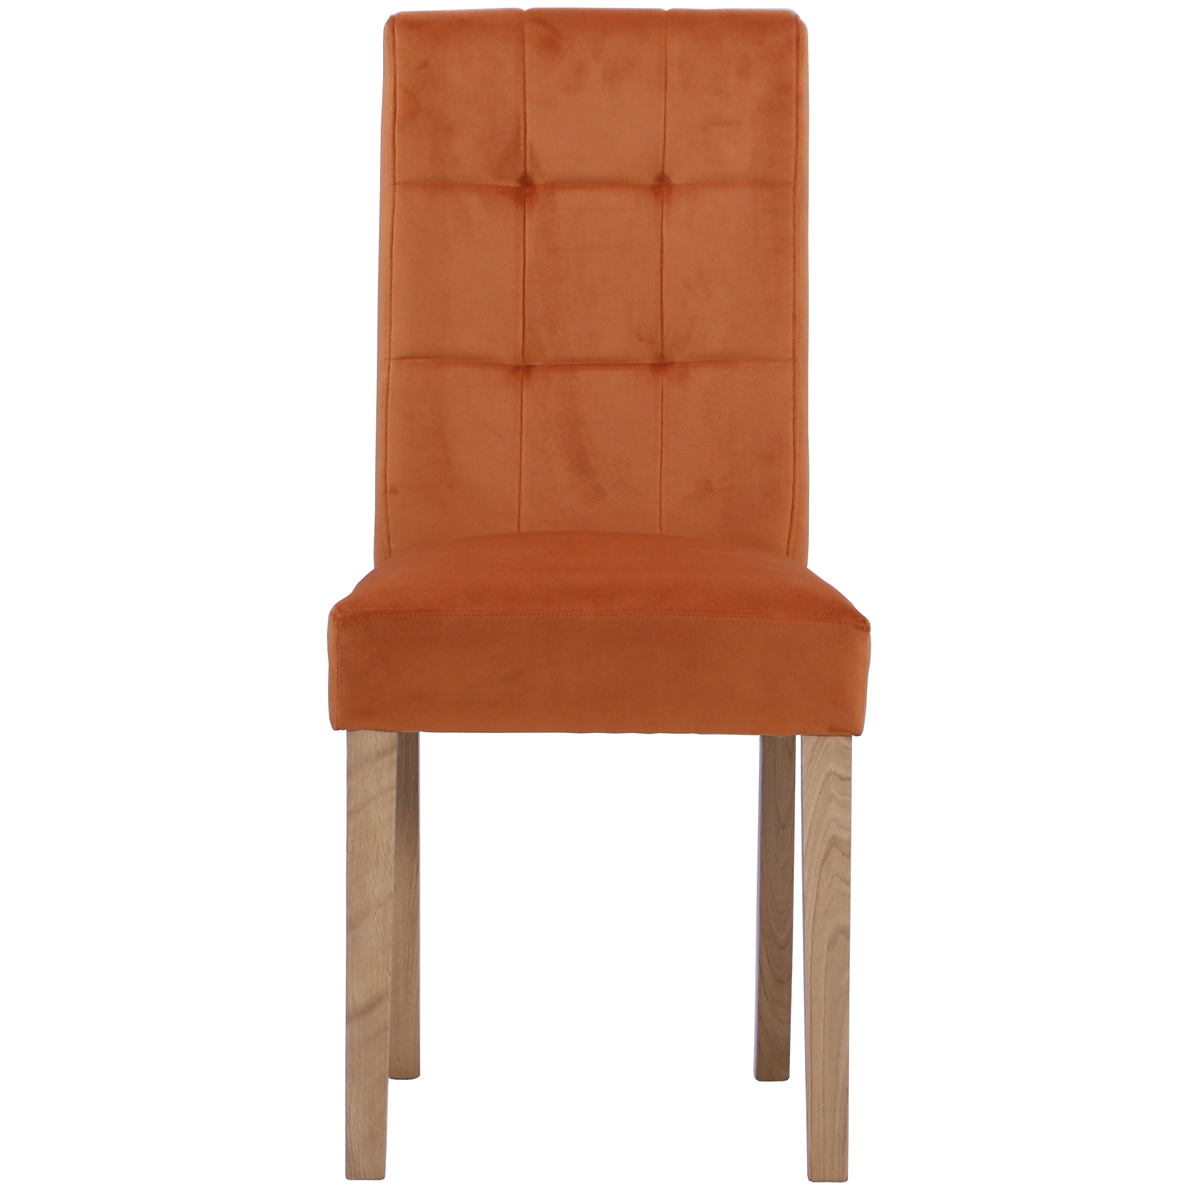 New Oak Ash 102 Chair